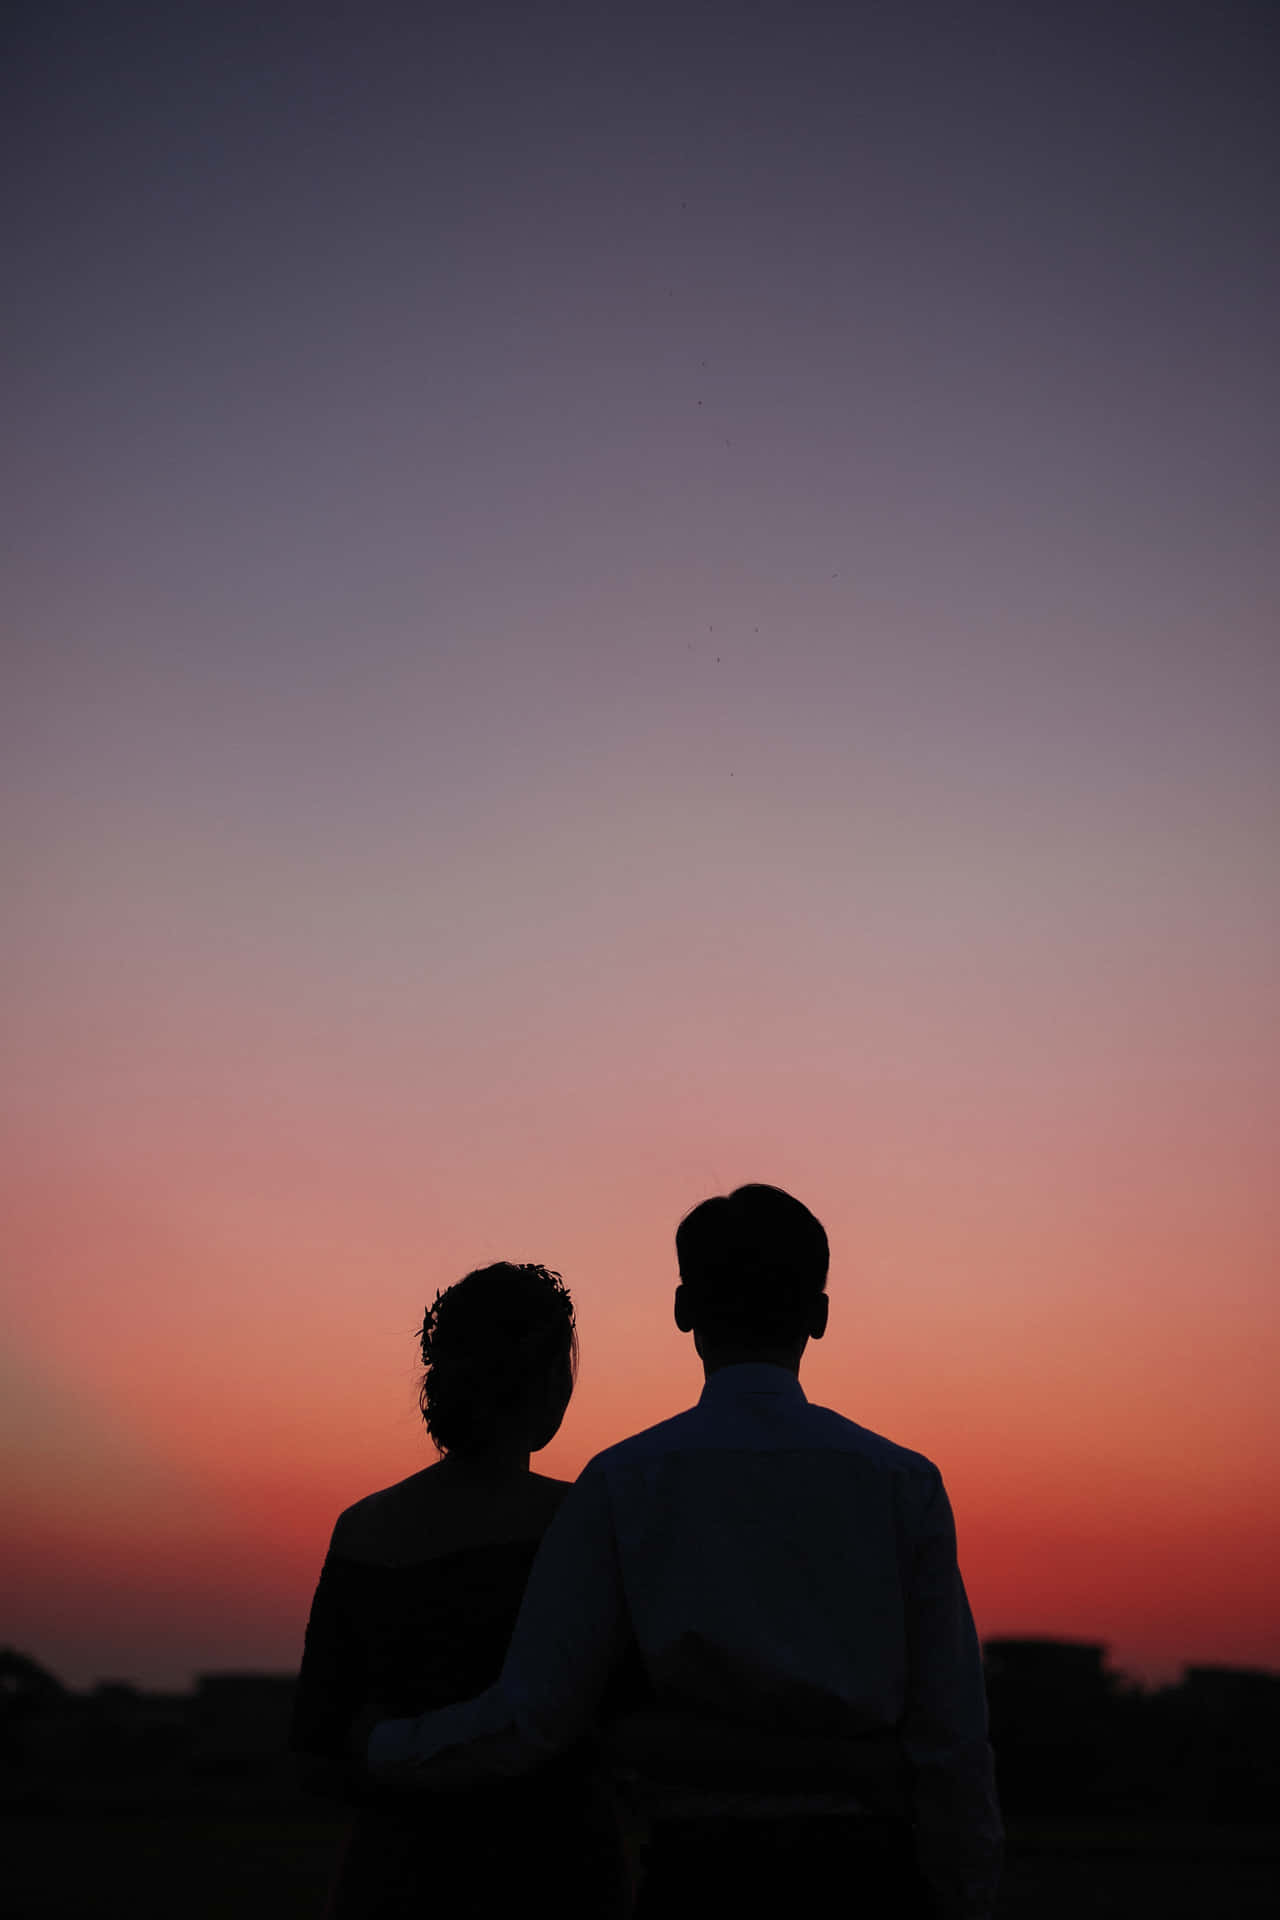 Bildvon Einem Paar, Das Unter Einem Himmel Mit Sonnenuntergangsschatten Steht.